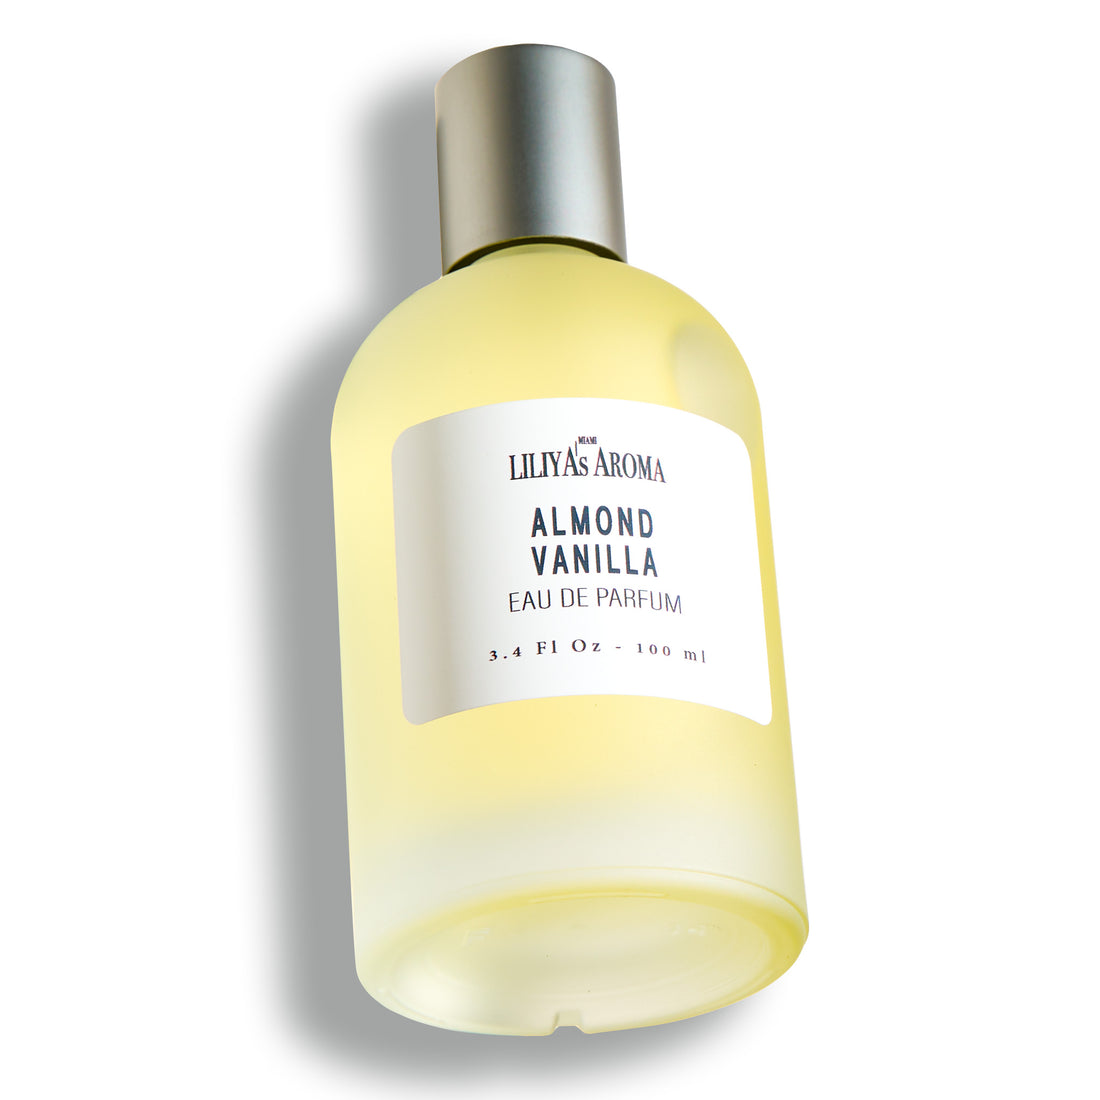 Almond - Vanilla Eau De Parfum for Women and Men 3.4 Fl Oz